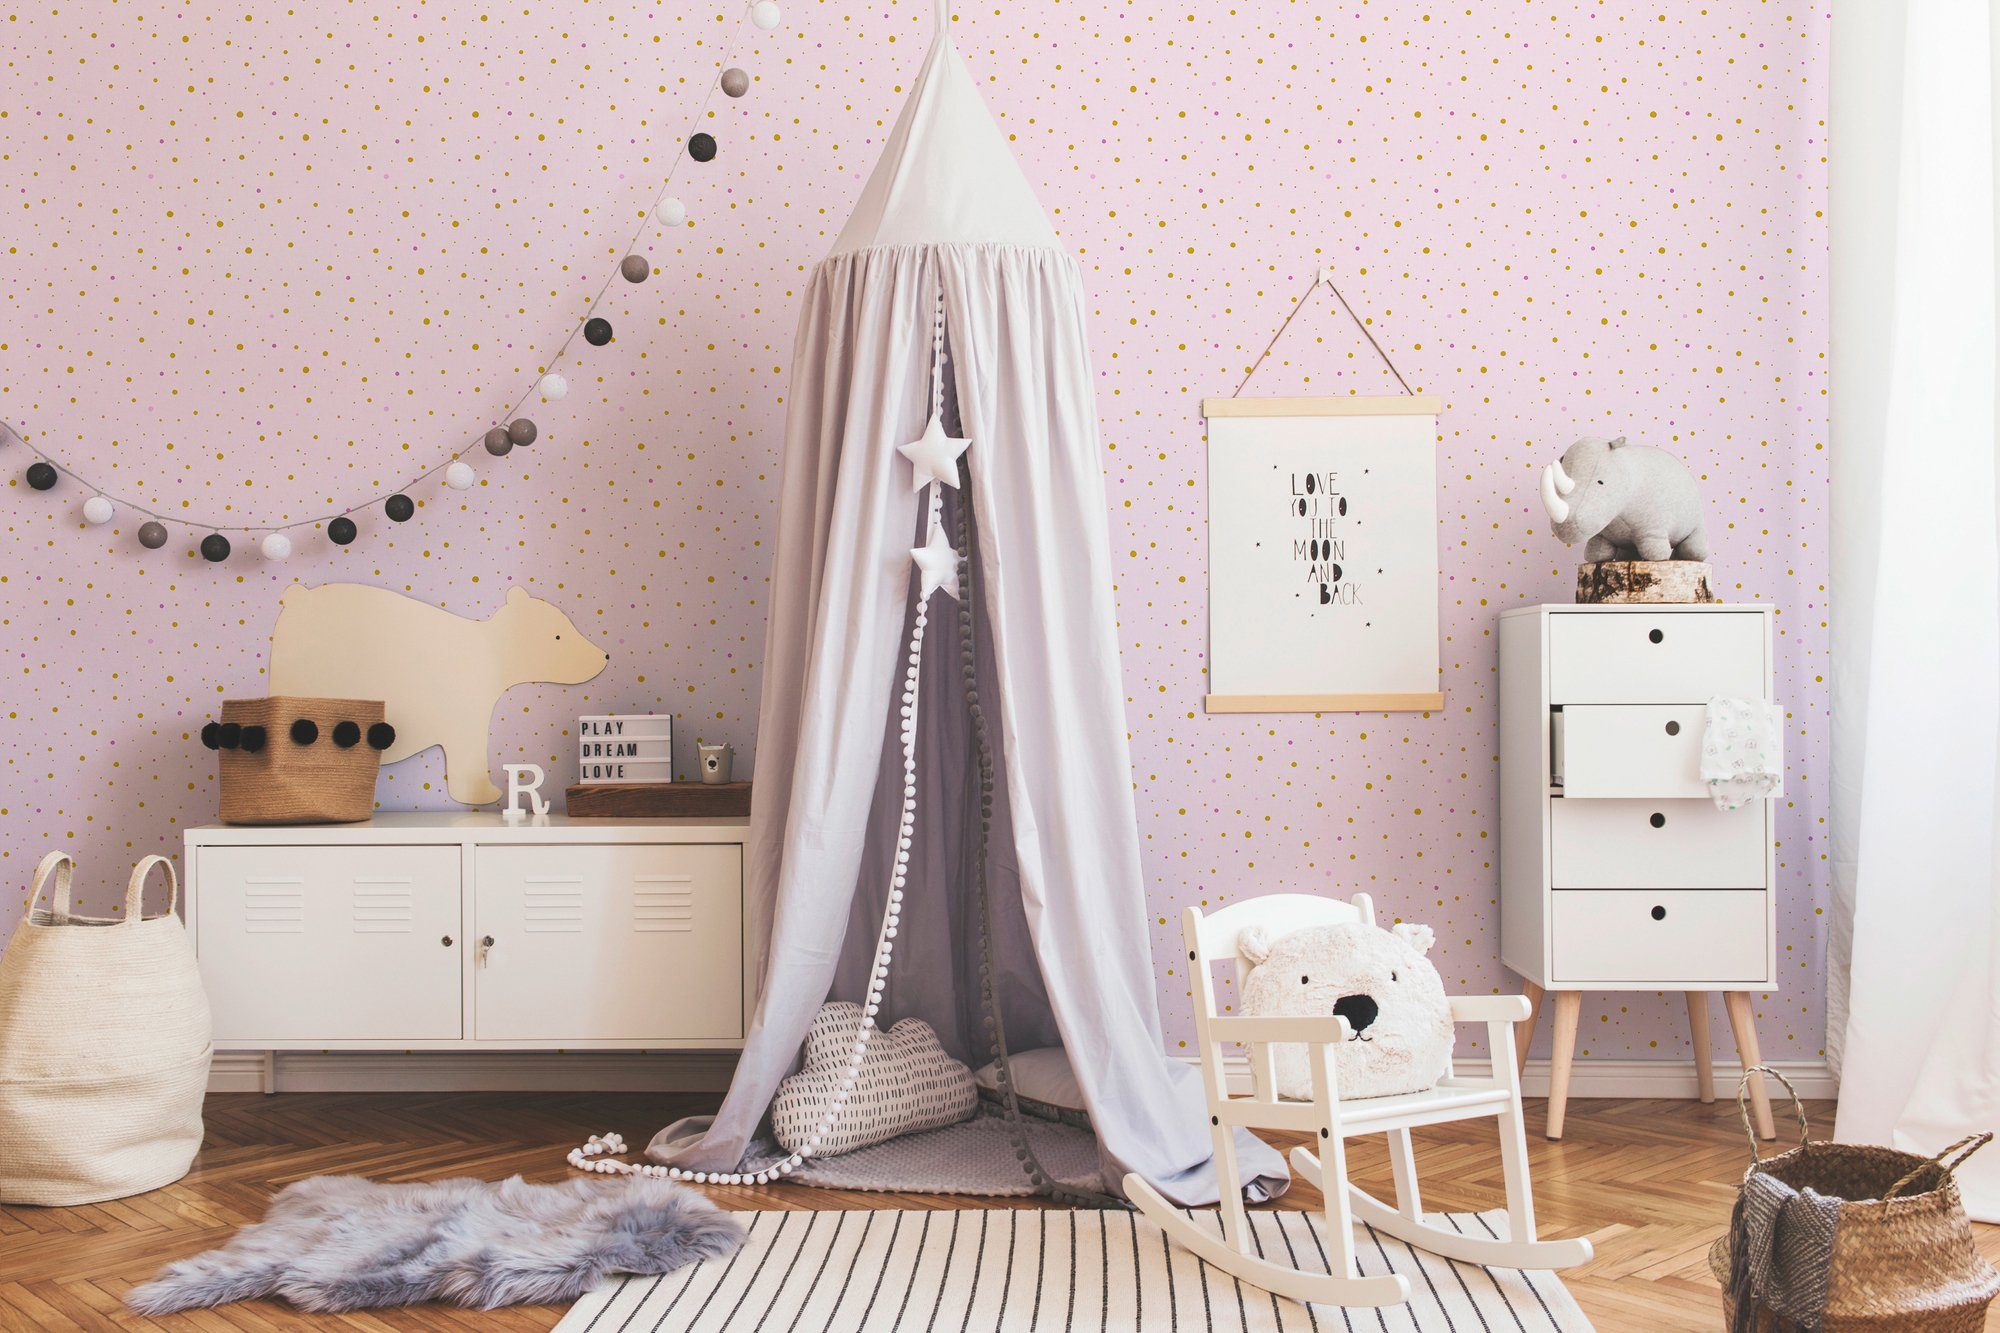 A.S. Création living Kinderzimmer gepunktet, Vliestapete Metallic Stars, Punkte rosa/braun Little walls Tapete glatt